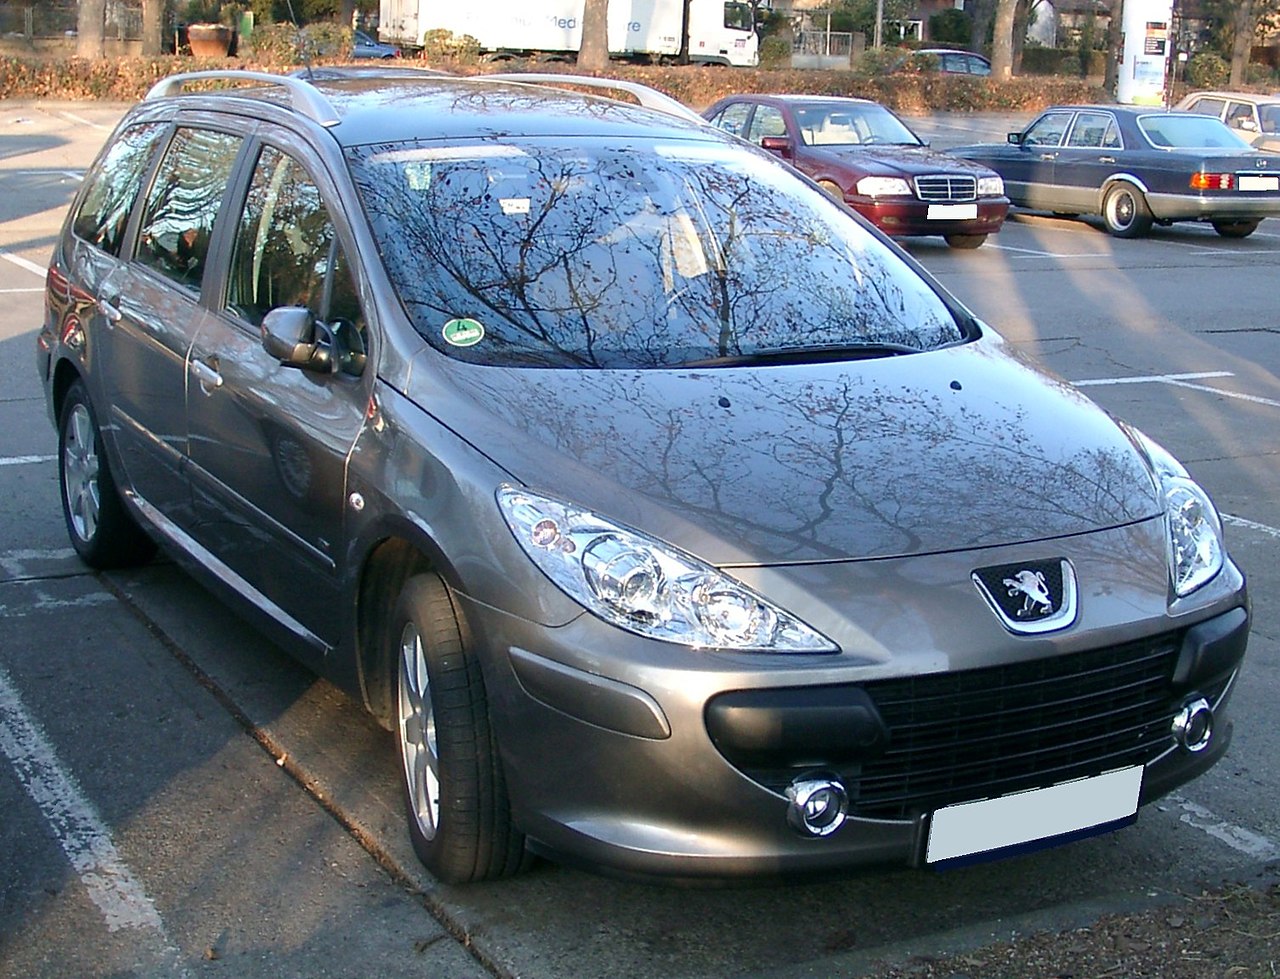 Datei:Peugeot 307 CC Facelift rear.jpg – Wikipedia